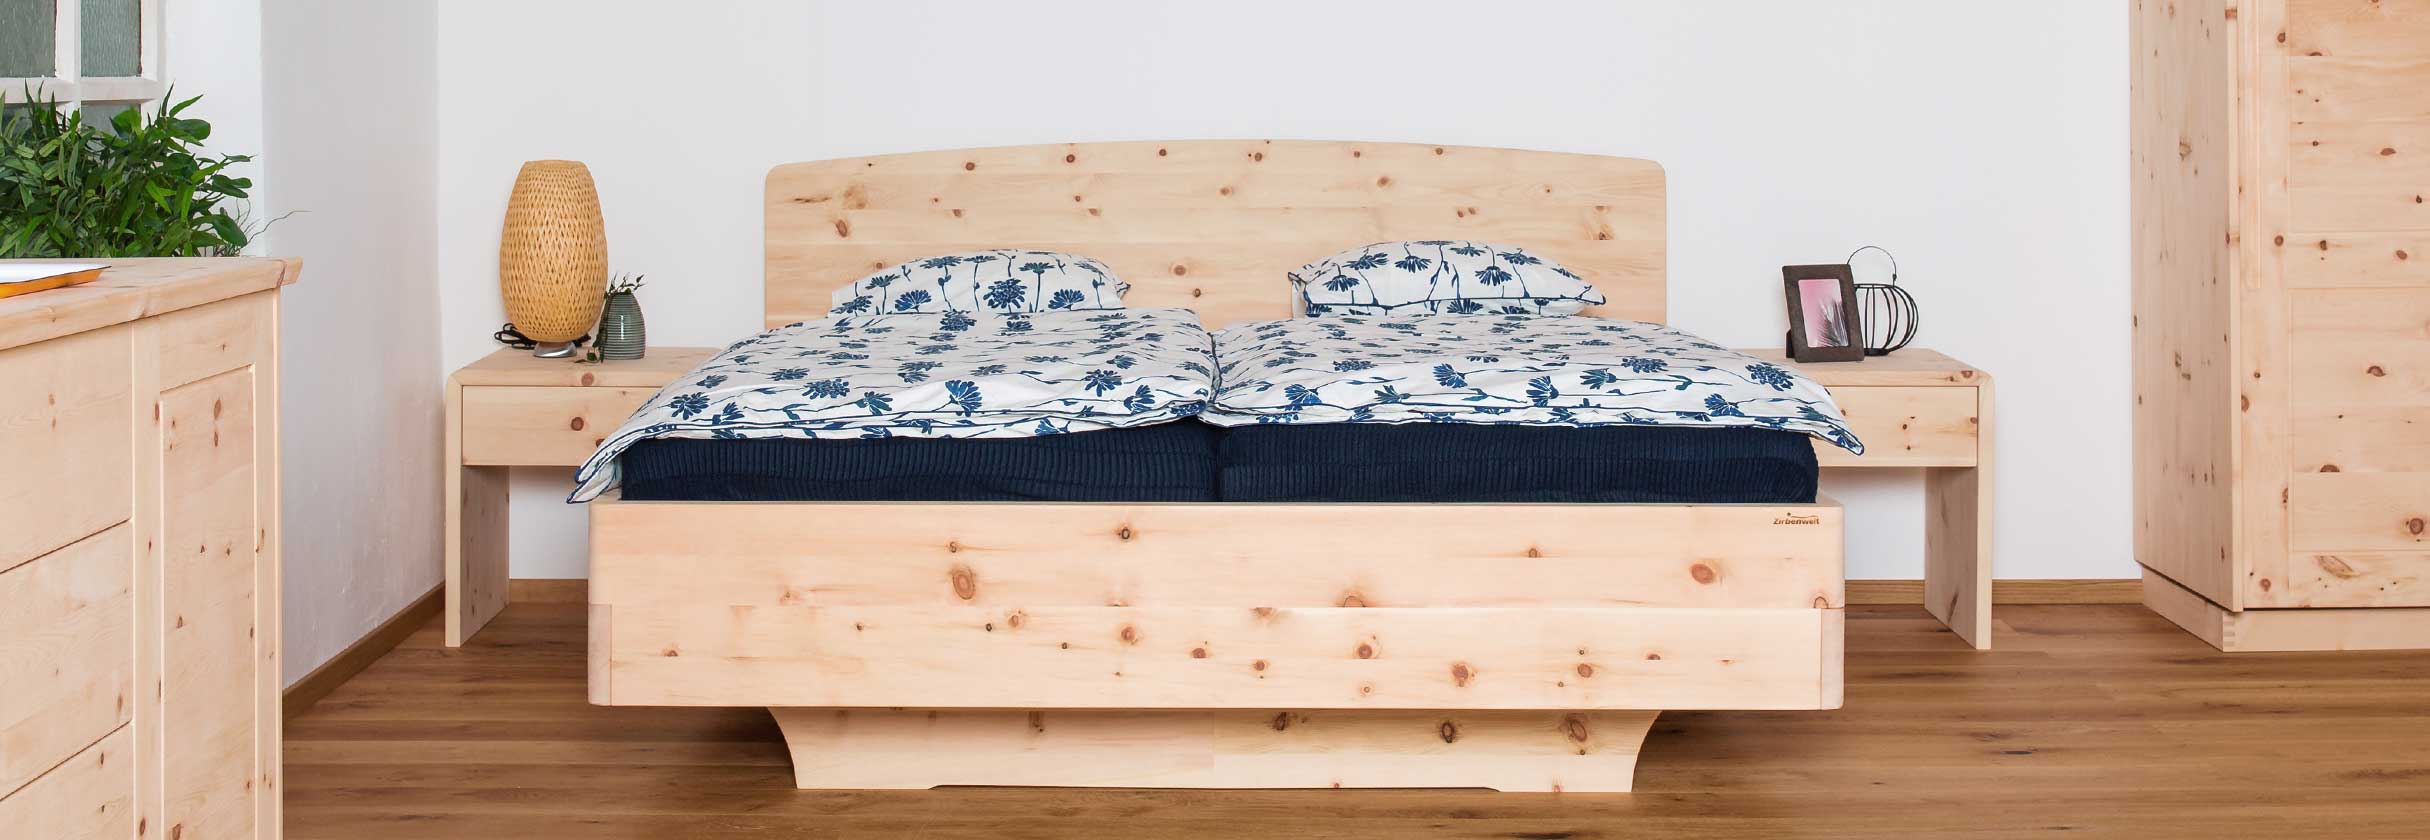 Zirbenbetten Zirbenmoebel Bett Holzbett Doppelbett aus Zirbenholz Schlafkomfort Zirbenvollholz